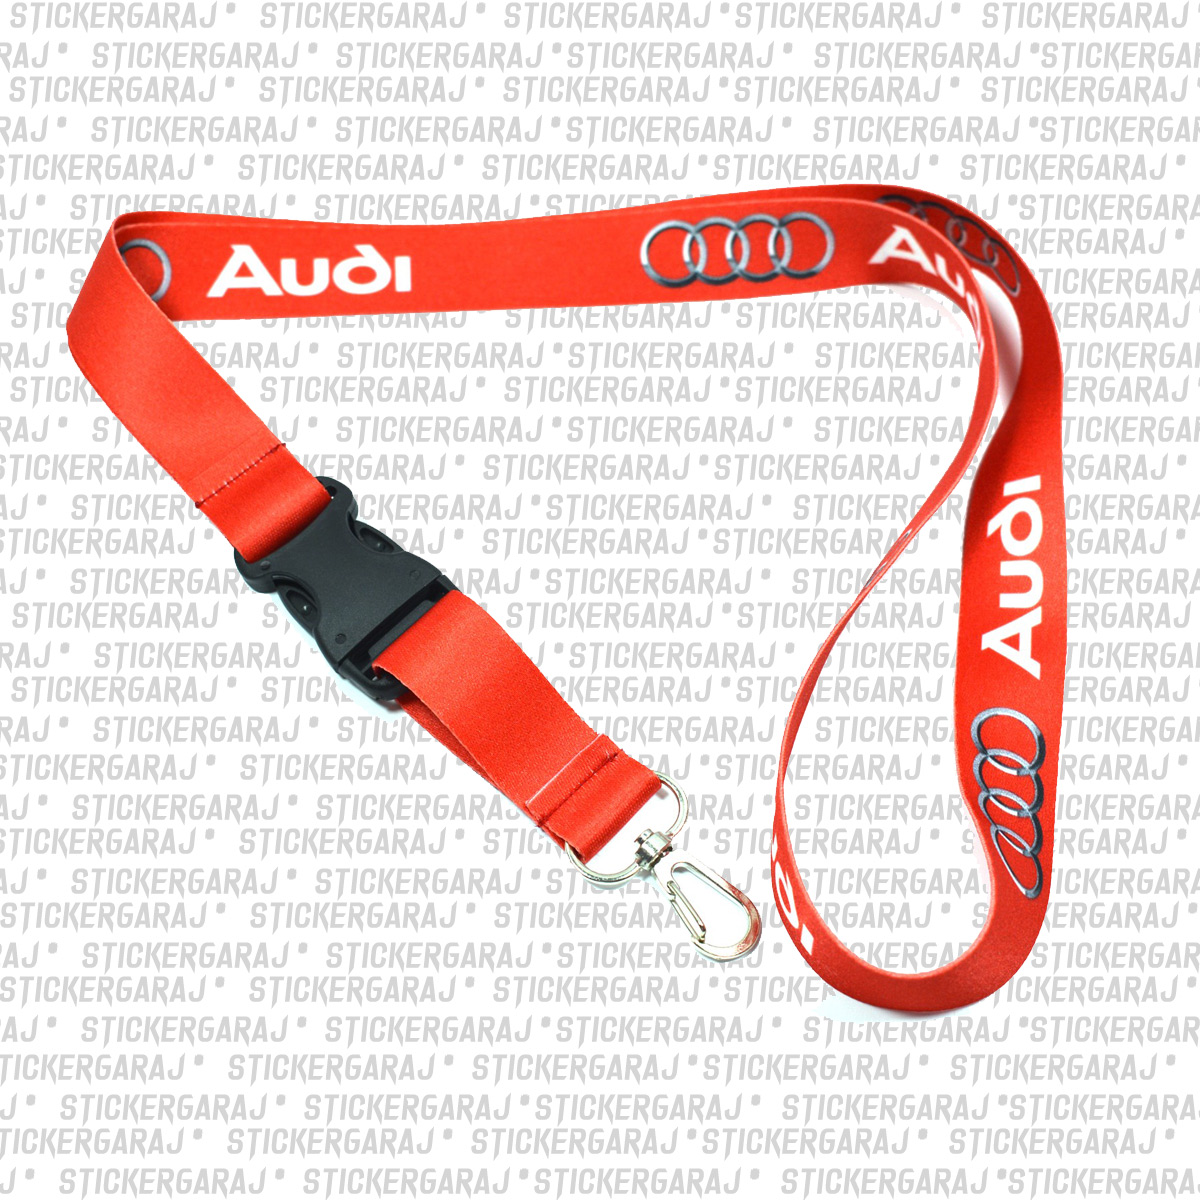 Audi anahtarlik - Audi ayna boyun ipi - Baskılı